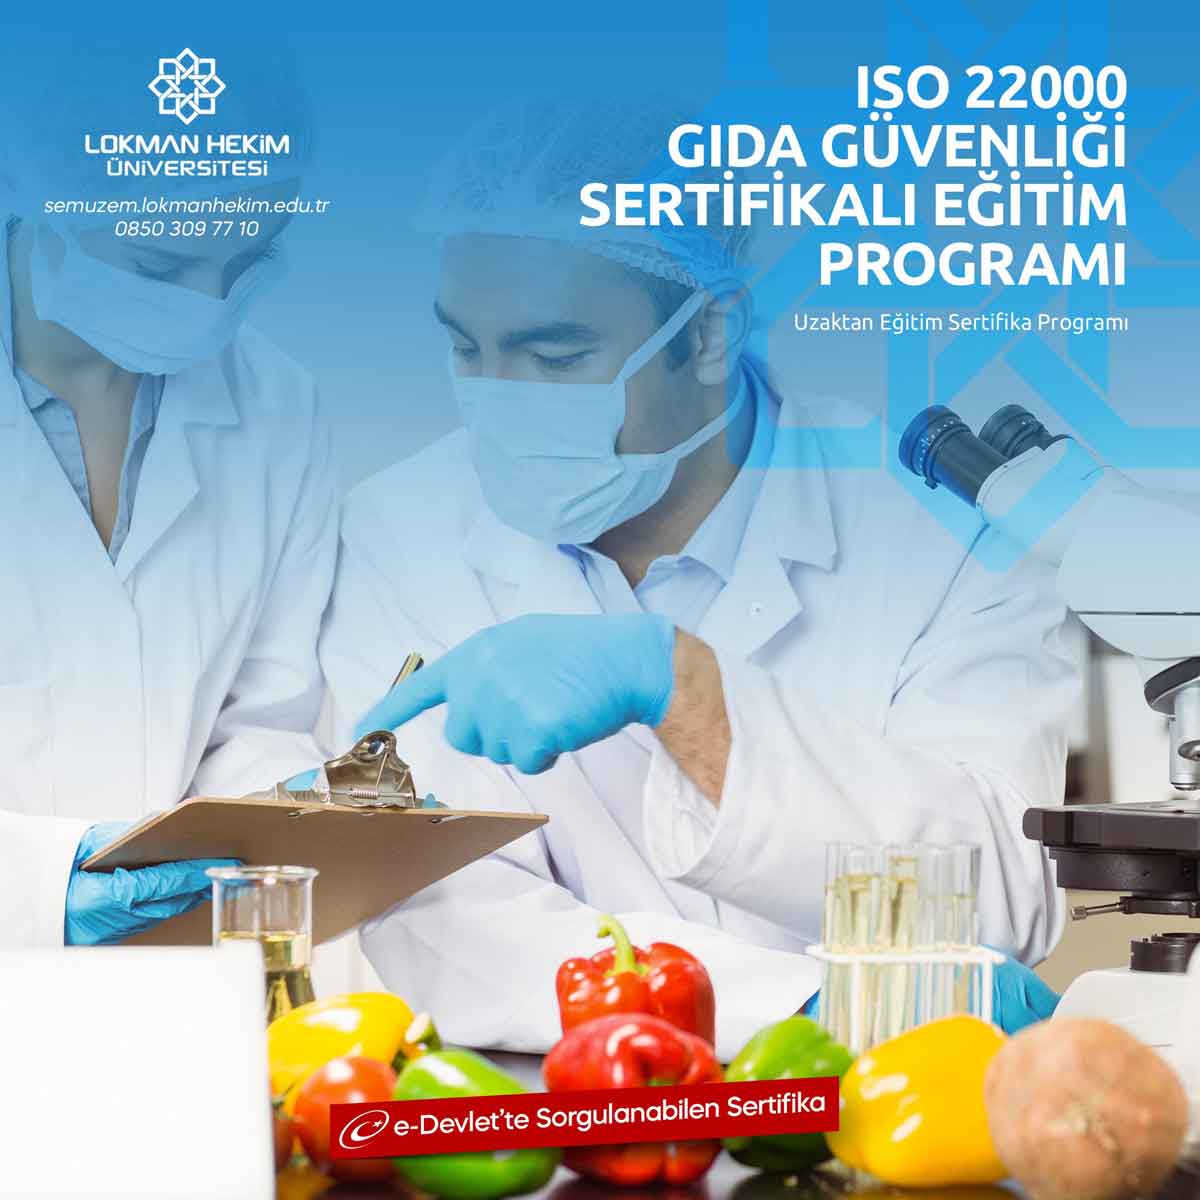 ISO 22000 Gıda Güvenliği Eğitimi Nedir